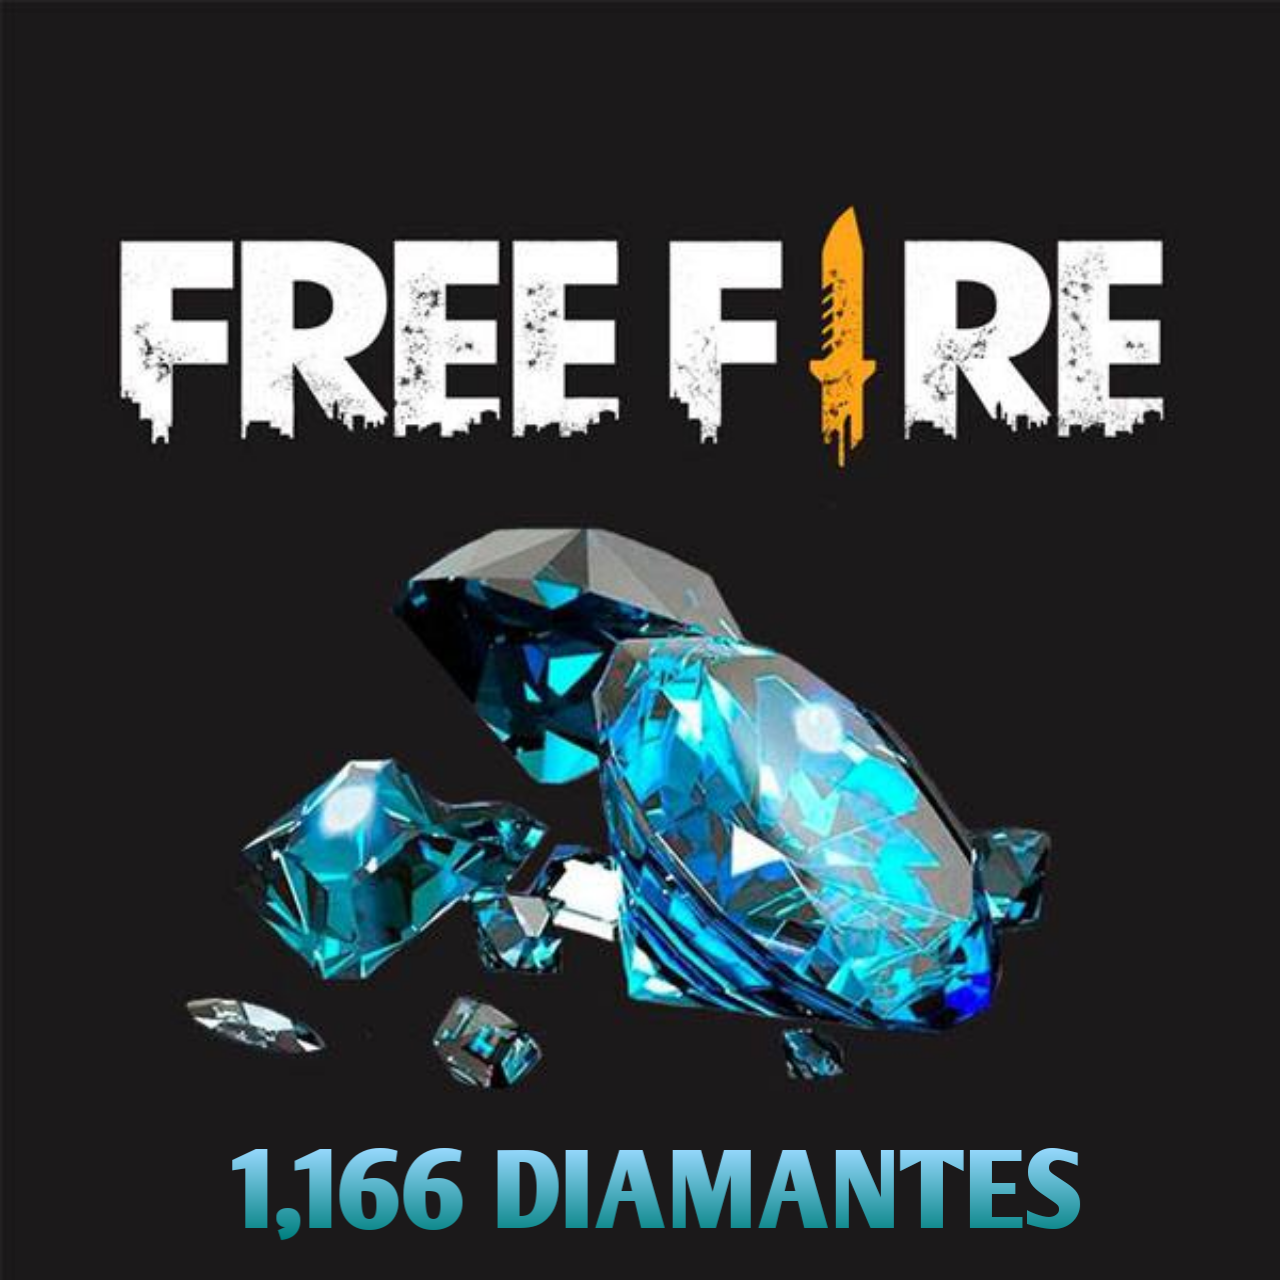 1,166 Diamantes Free Fire